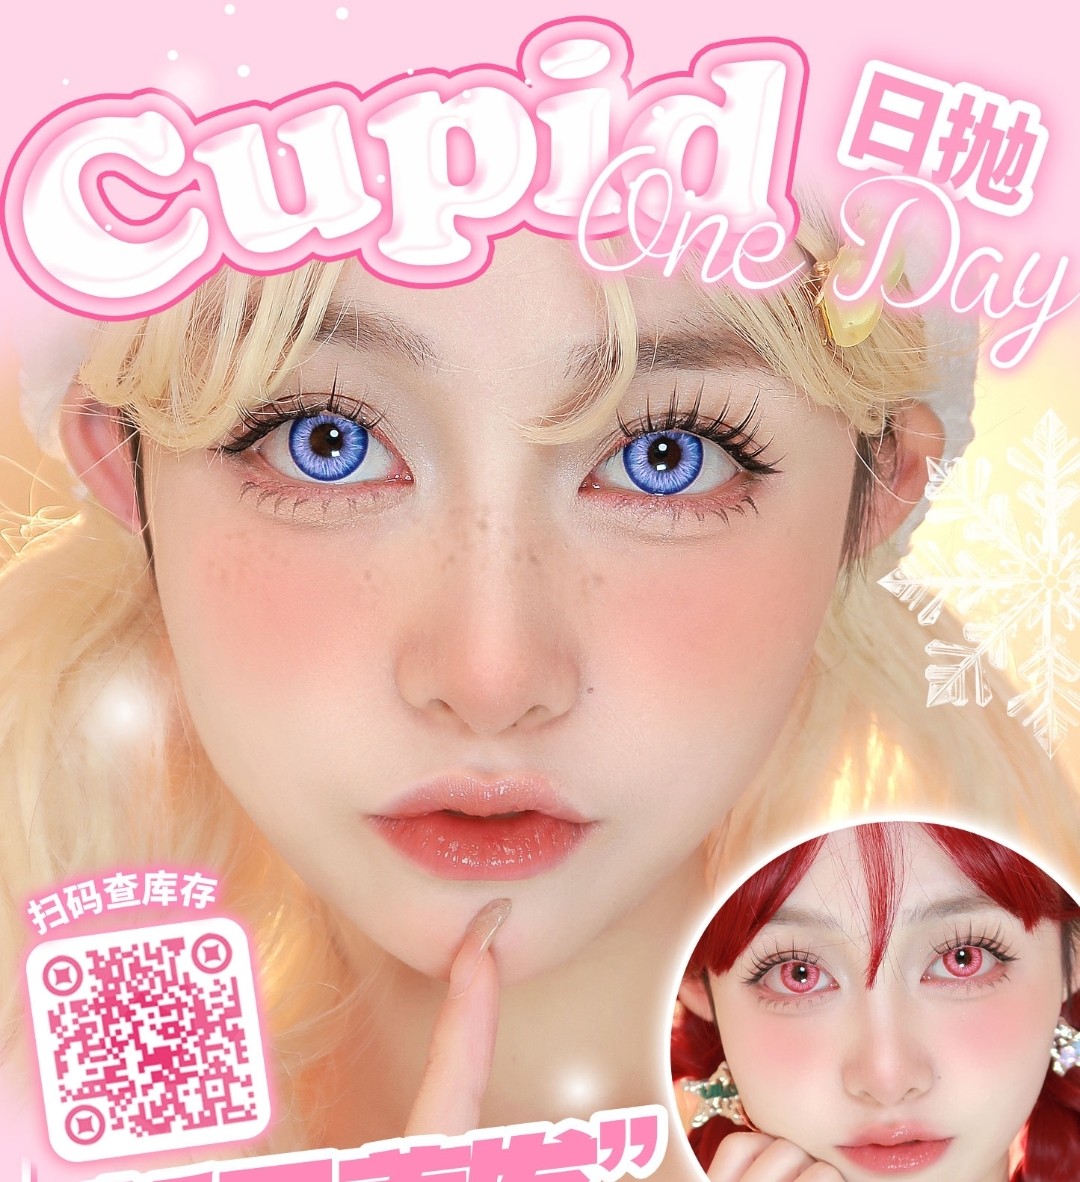 【日抛上新】Cupid 甜酷系列/环游世界系列 女神节首发